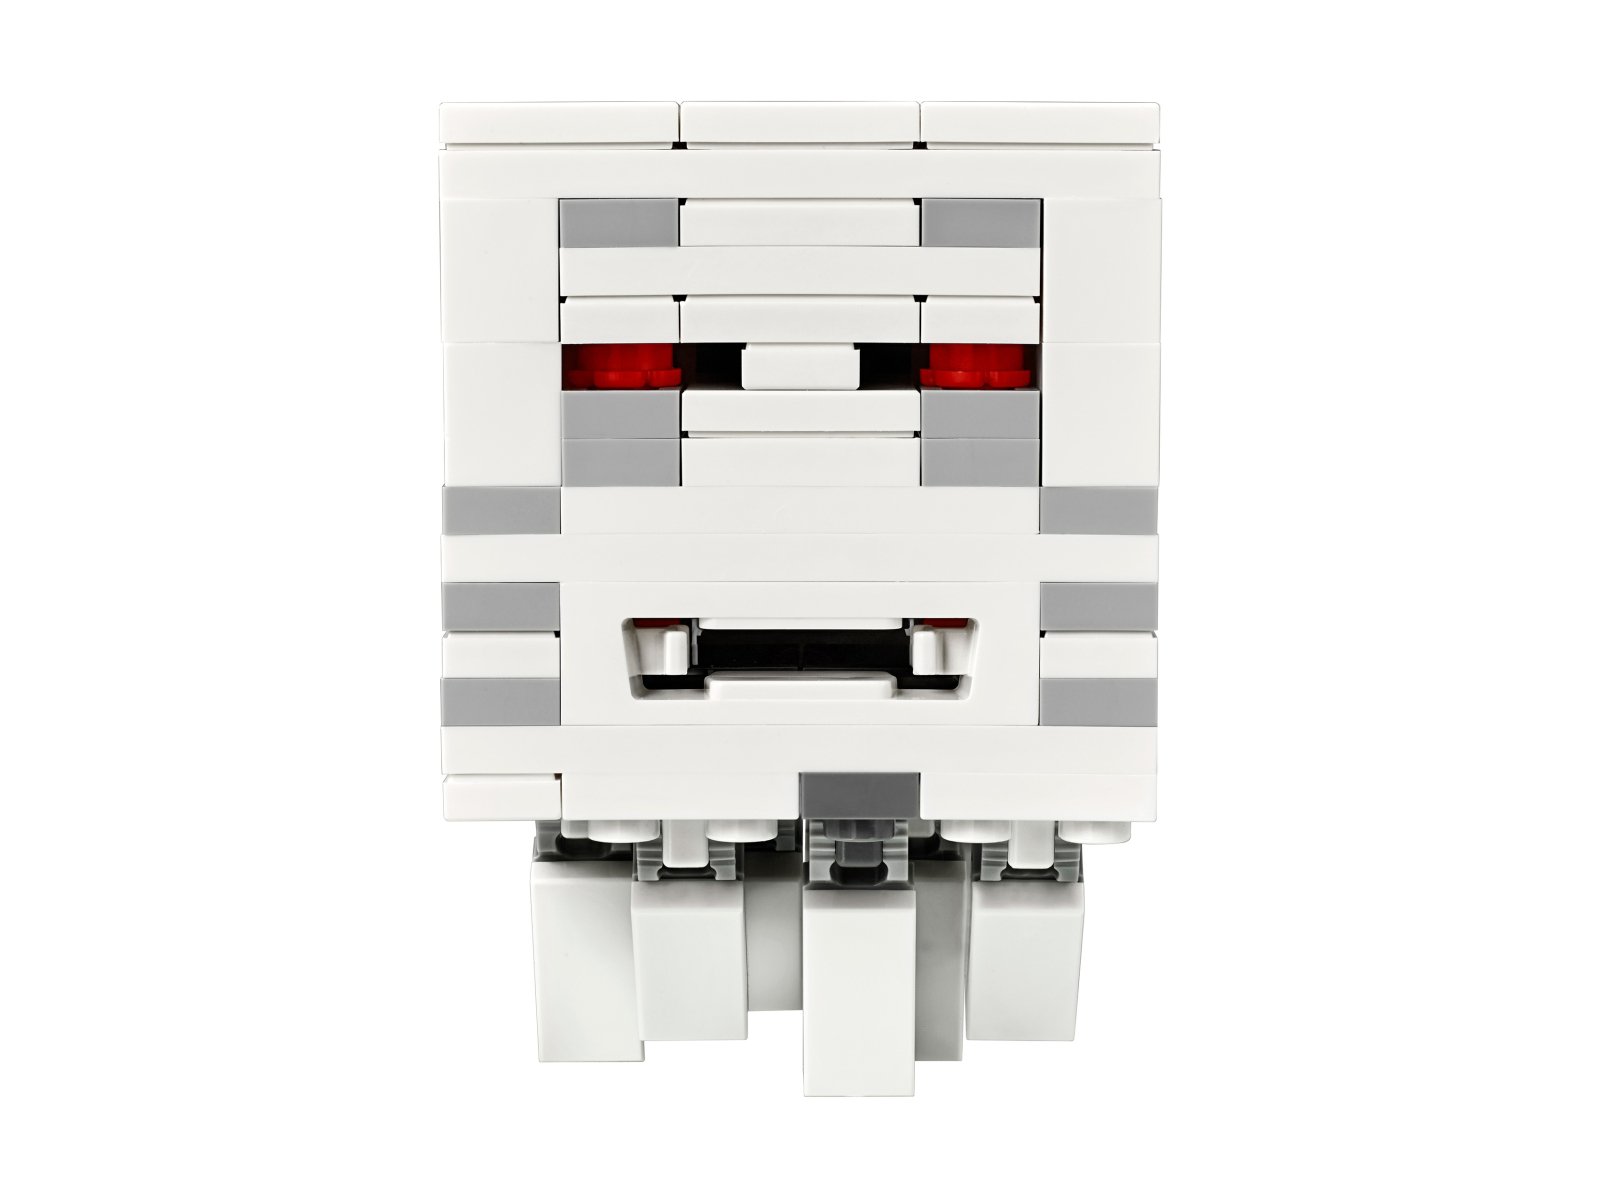 LEGO Minecraft Portal do Netheru 21143